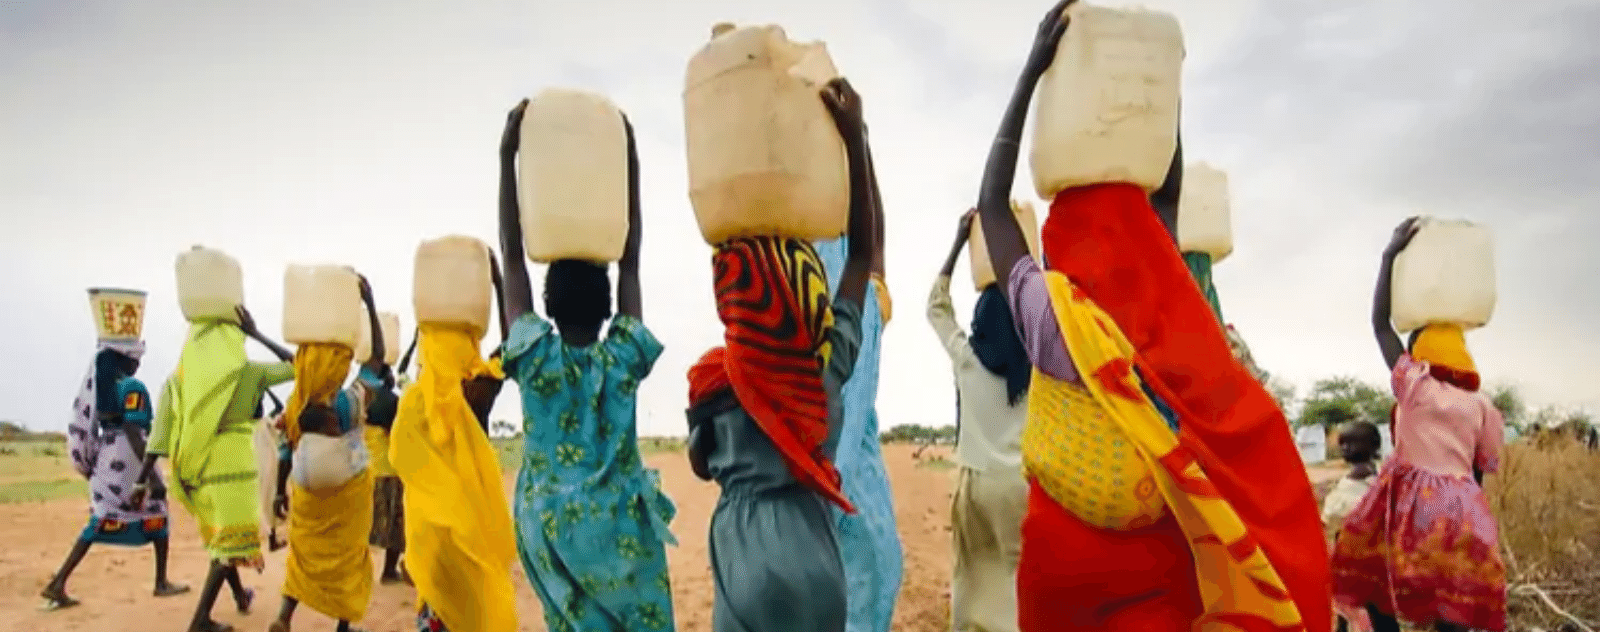 Manque d'eau dans les pays africains